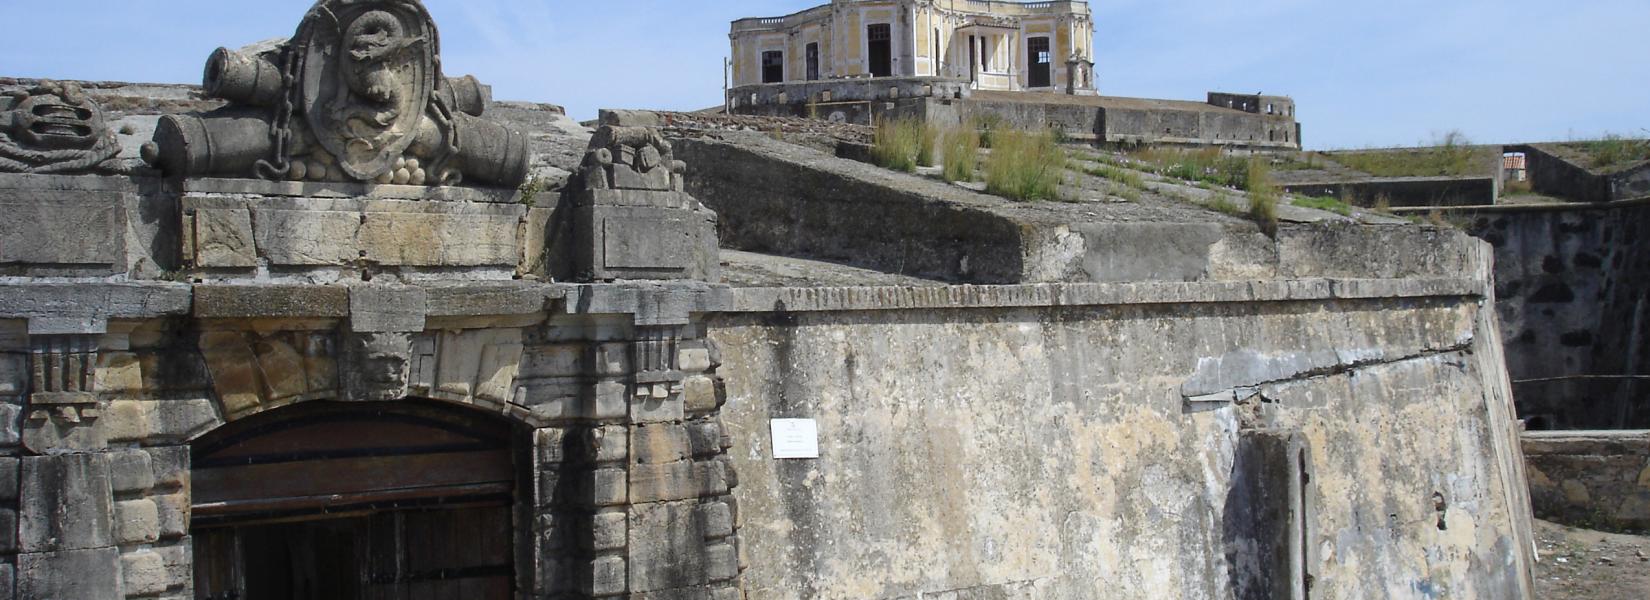 Forte de Nossa Senhora da Graça : fortress Our Lady of Grace